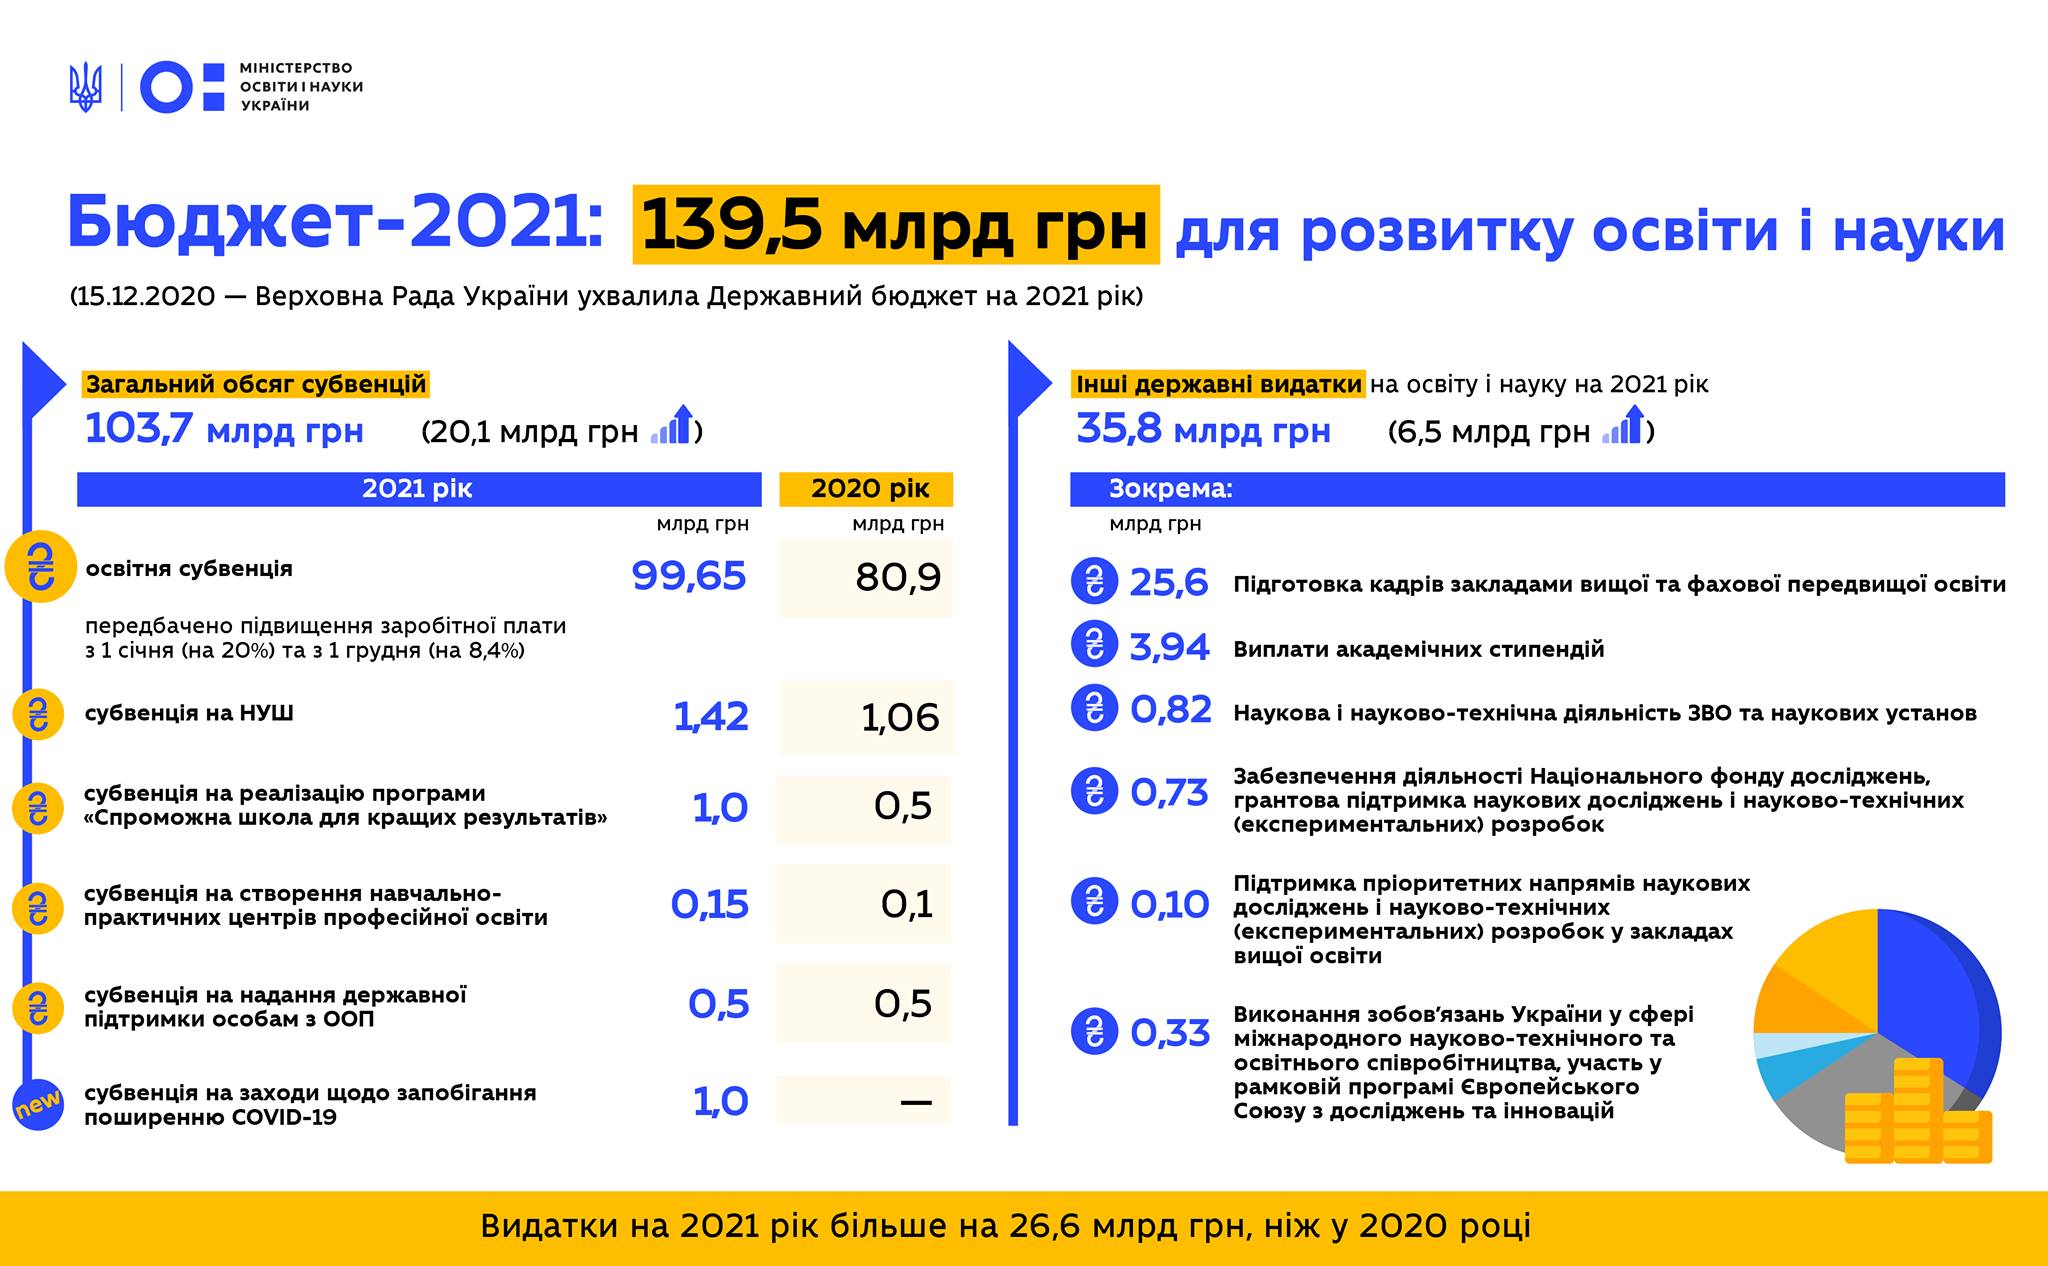 Розвиток освіти і науки у 2021 році: Бюджет МОН